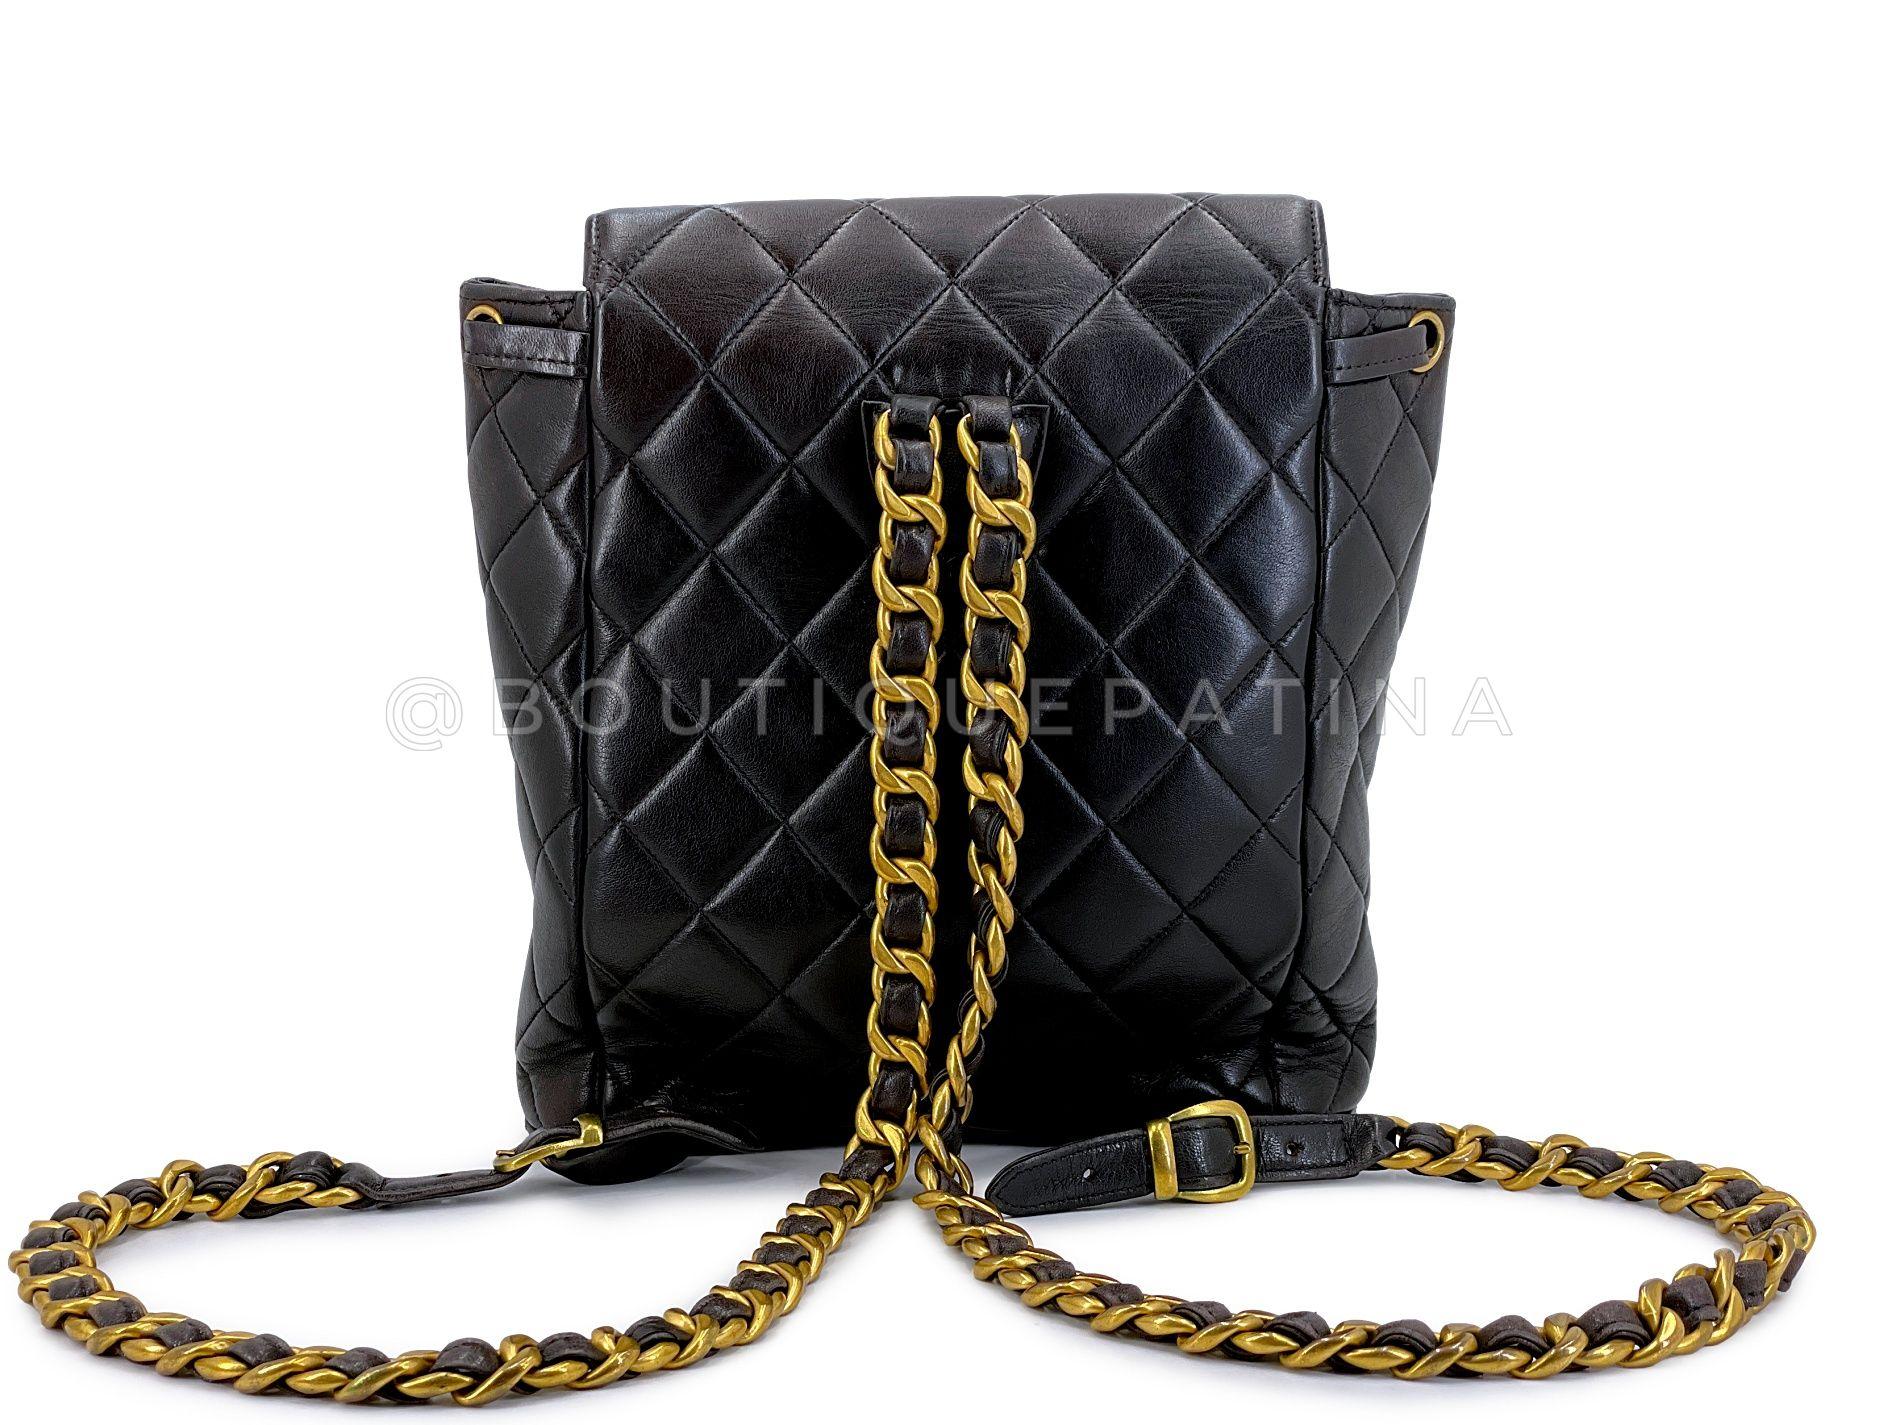 Chanel 1994 Vintage Black Lambskin Duma Backpack Bag 24k GHW 66235 For Sale 1